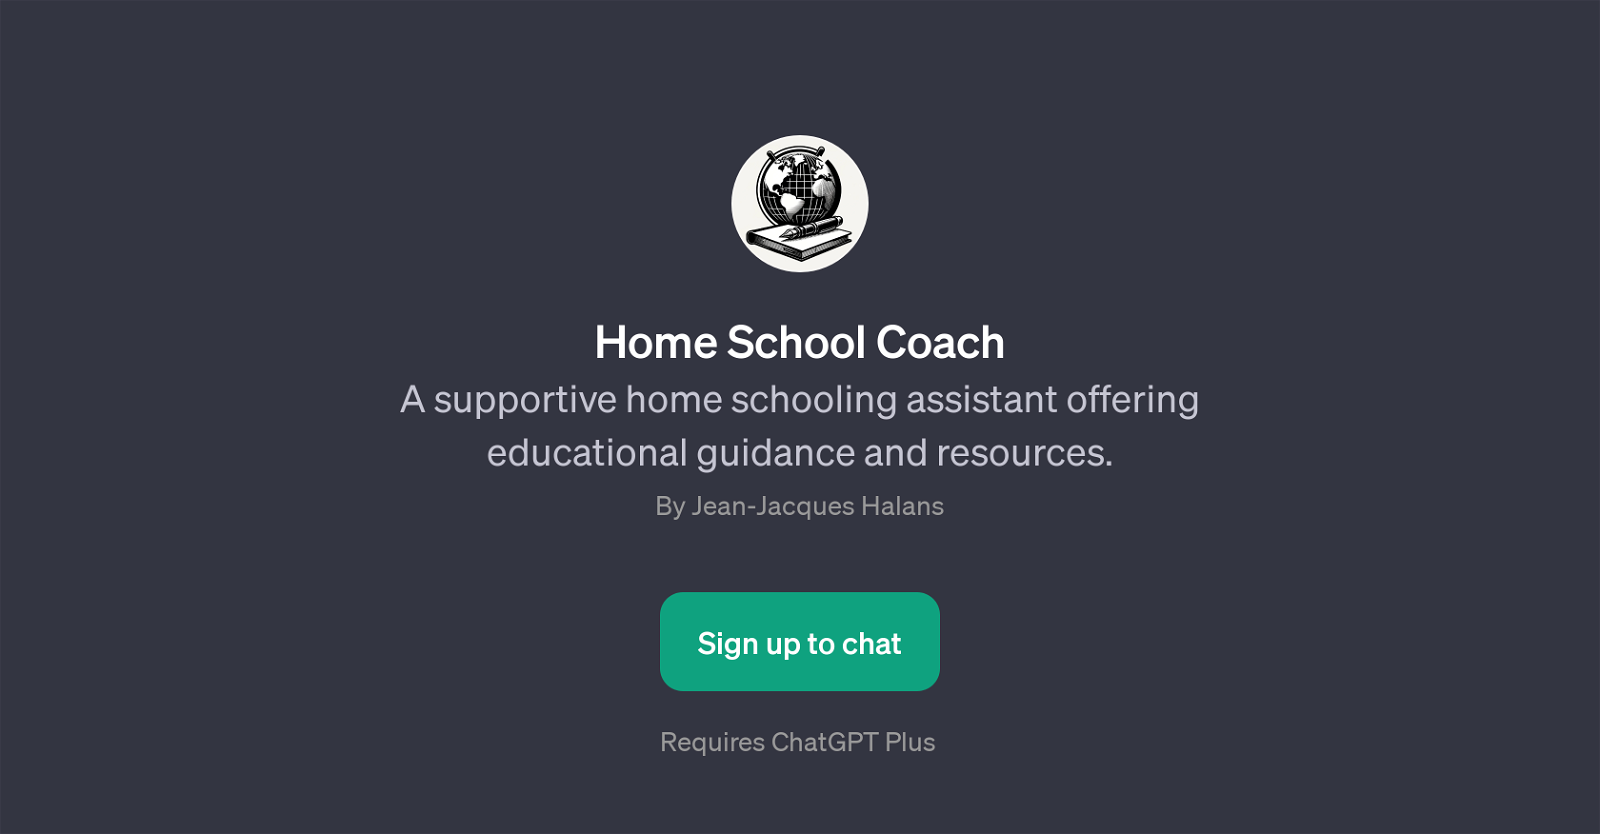 Home School Coach website